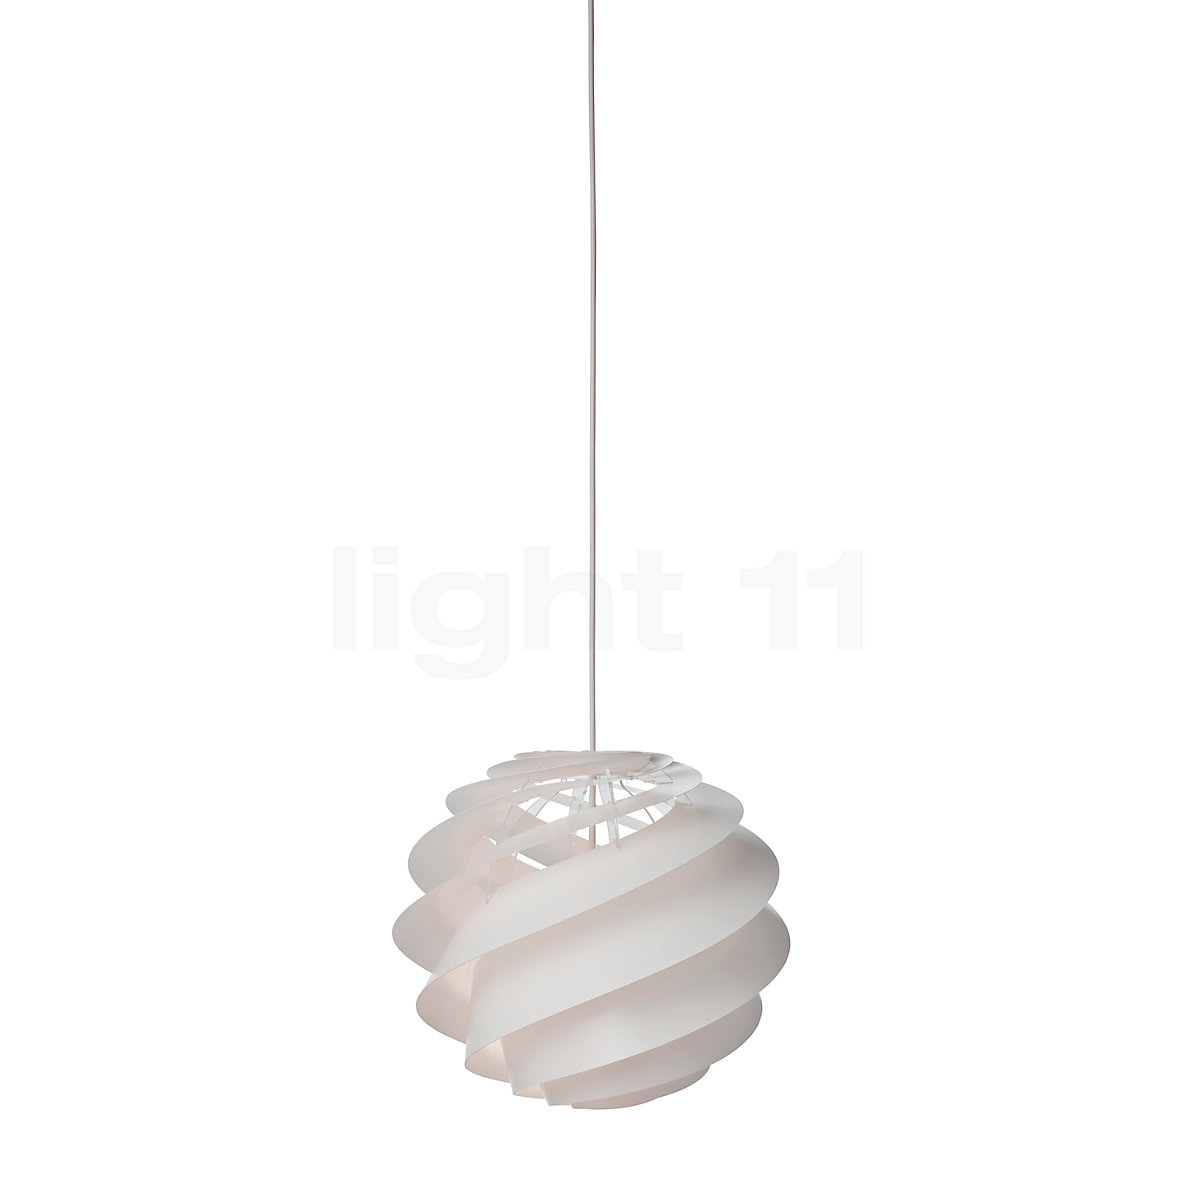 Omgekeerde Terzijde Moederland Le Klint Swirl 3 Hanglamp kopen bij light11.nl